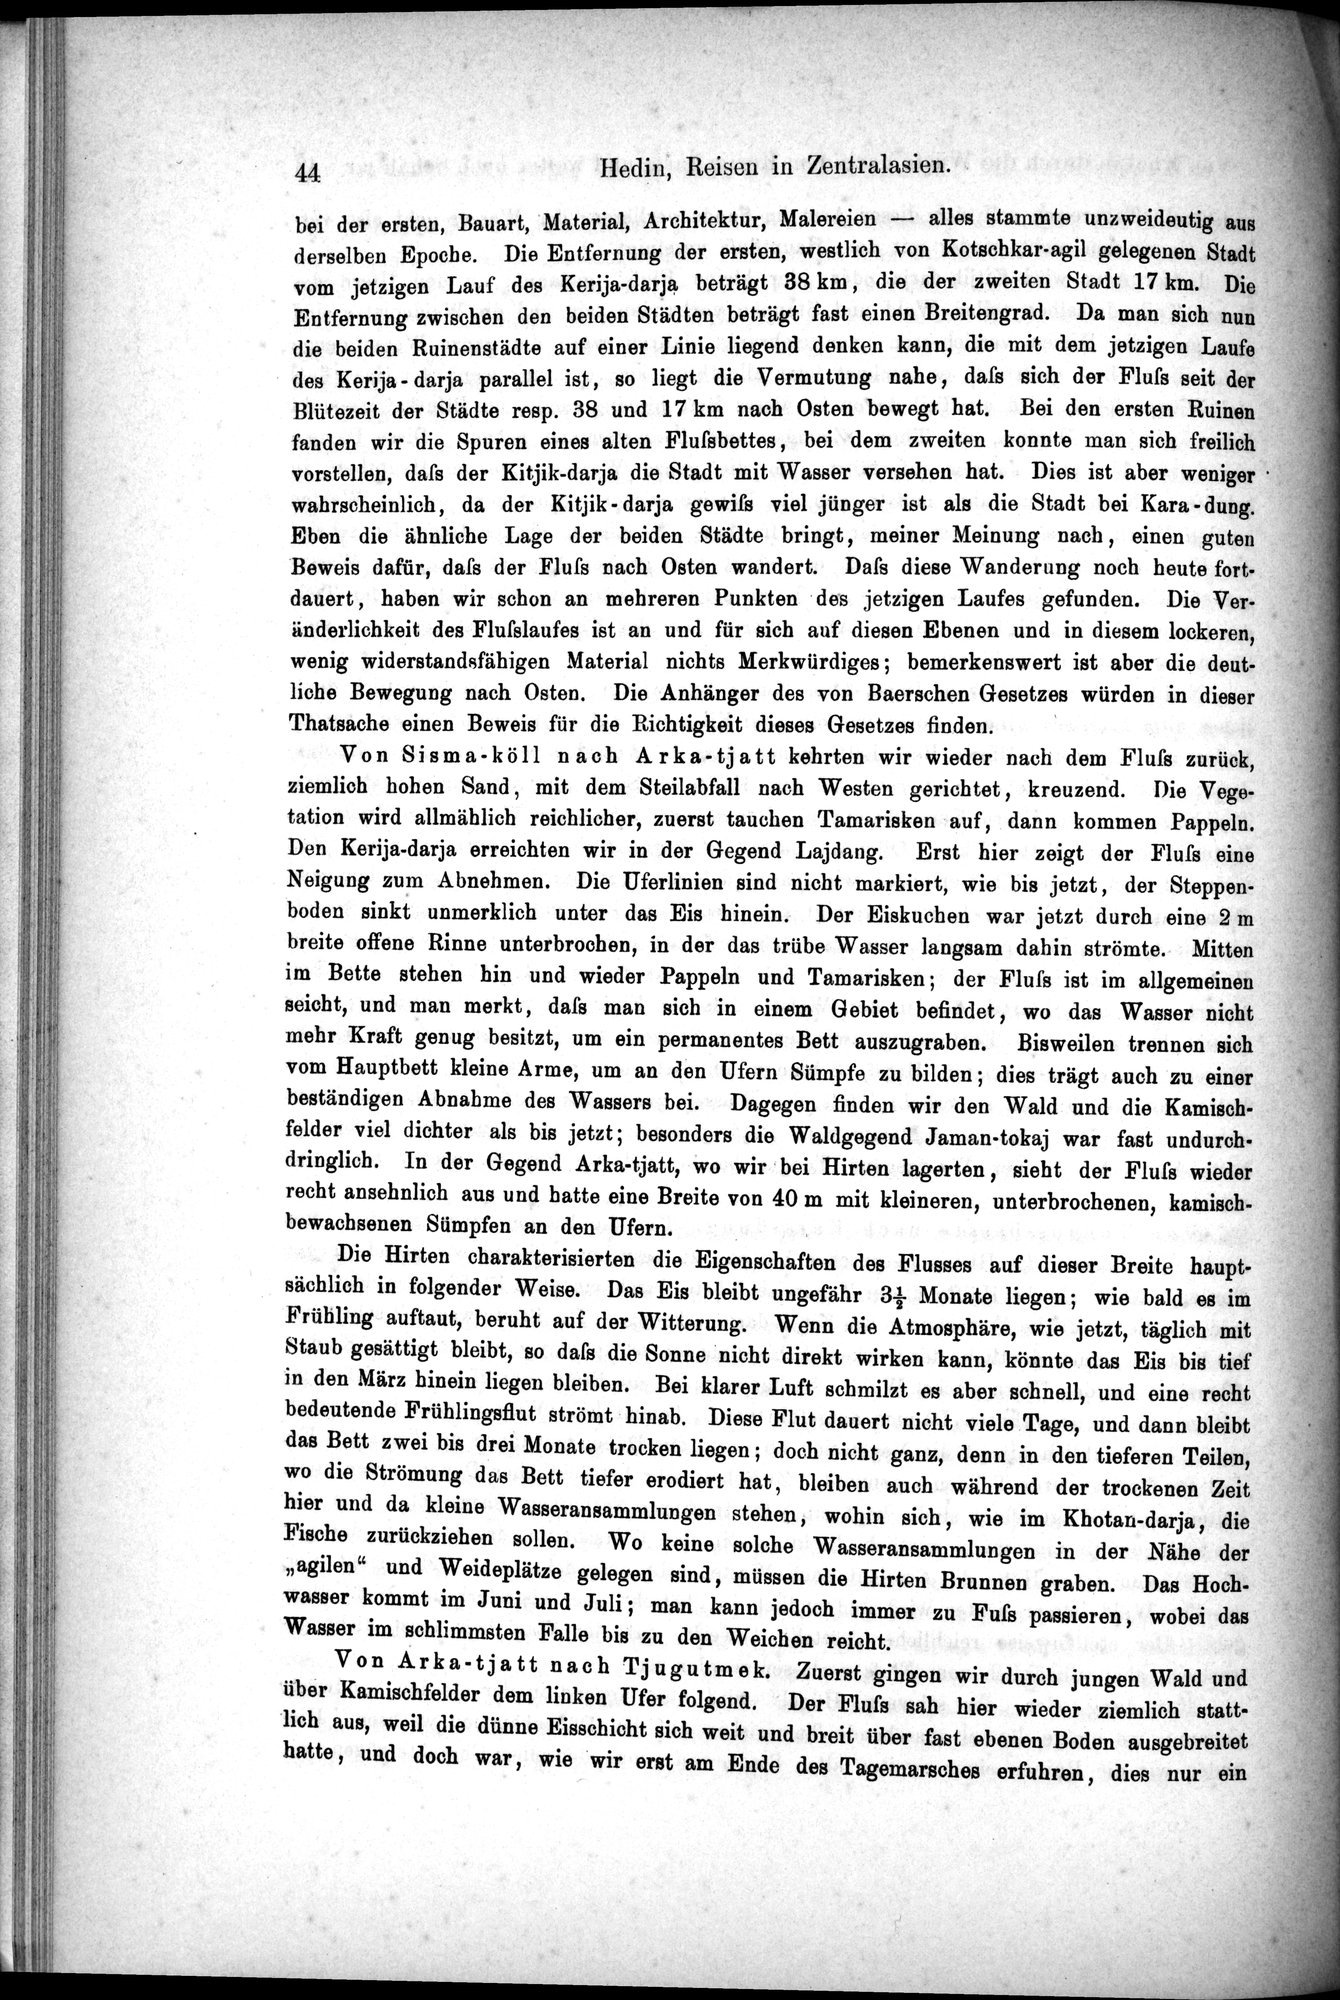 Die Geographische-Wissenschaftlichen Ergebnisse meiner Reisen in Zentralasien, 1894-1897 : vol.1 / Page 56 (Grayscale High Resolution Image)